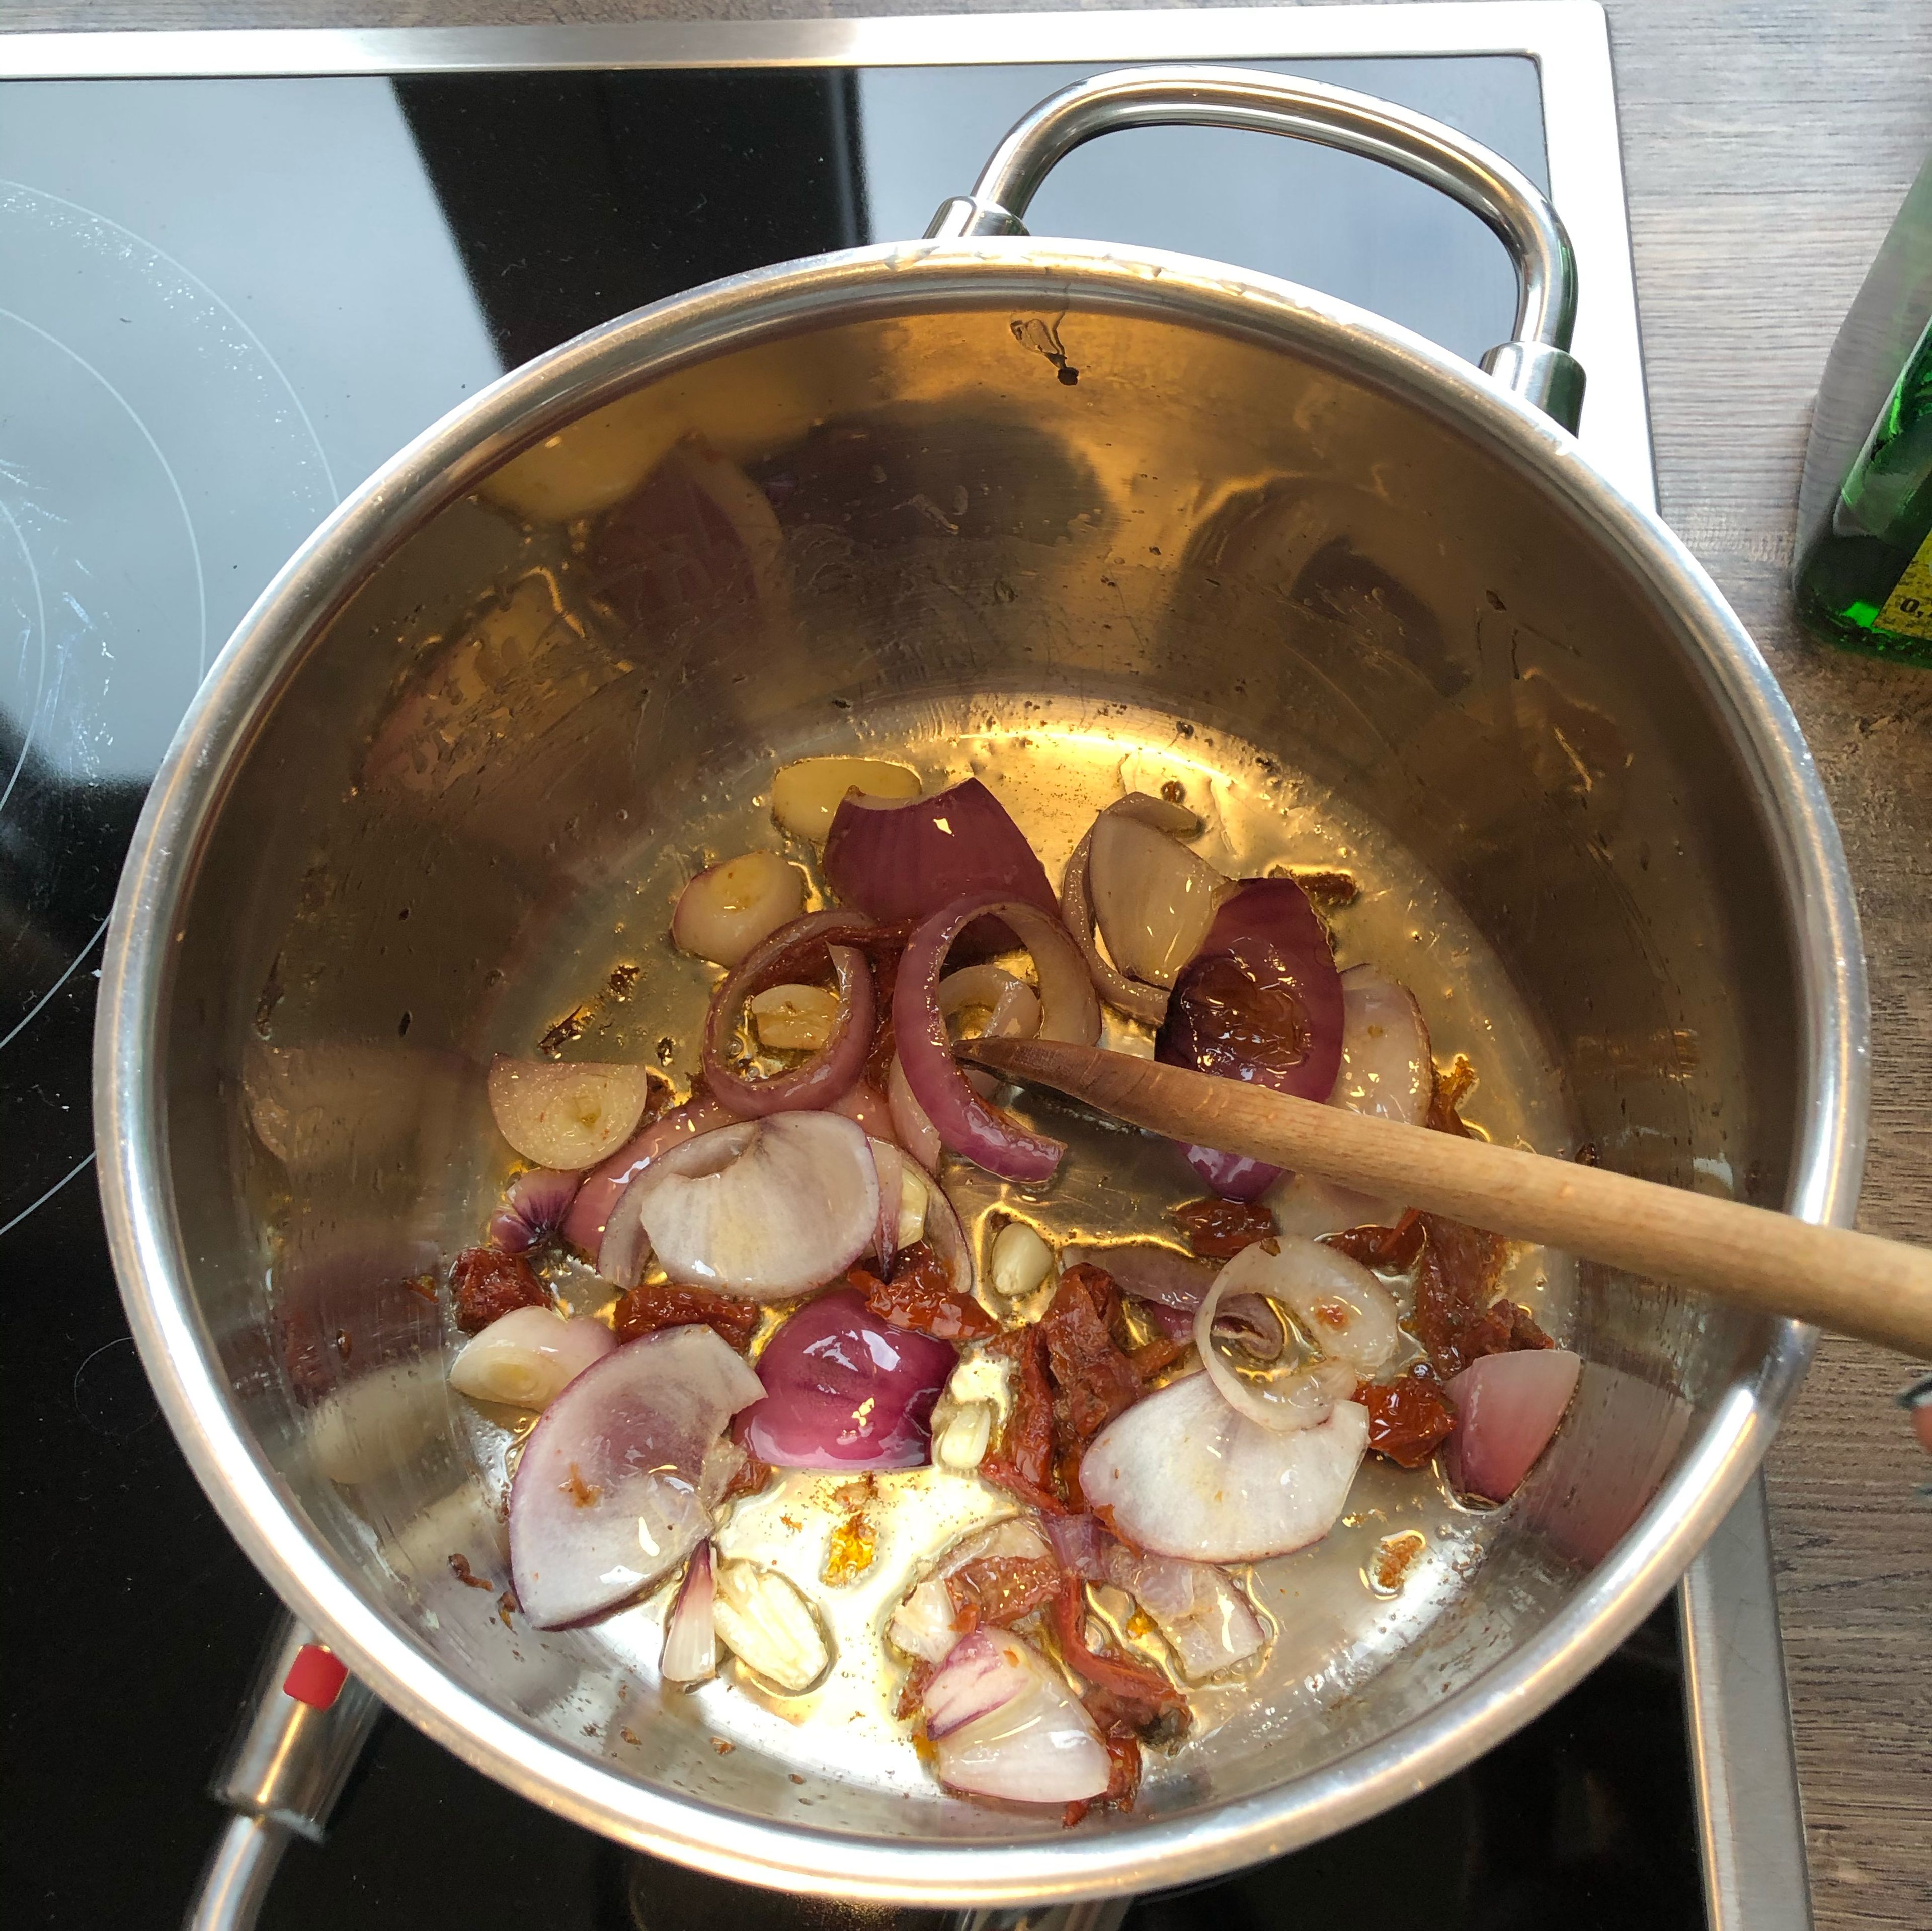 Einen Topf aufstellen und etwas Öl hinzugeben (erst wenn der Topf heiß ist). In der Zwischenzeit Knoblauch und Zwiebeln schneiden. Und in den Topf geben, kurz anbraten und dann die getrockneten Tomaten hinzugeben.